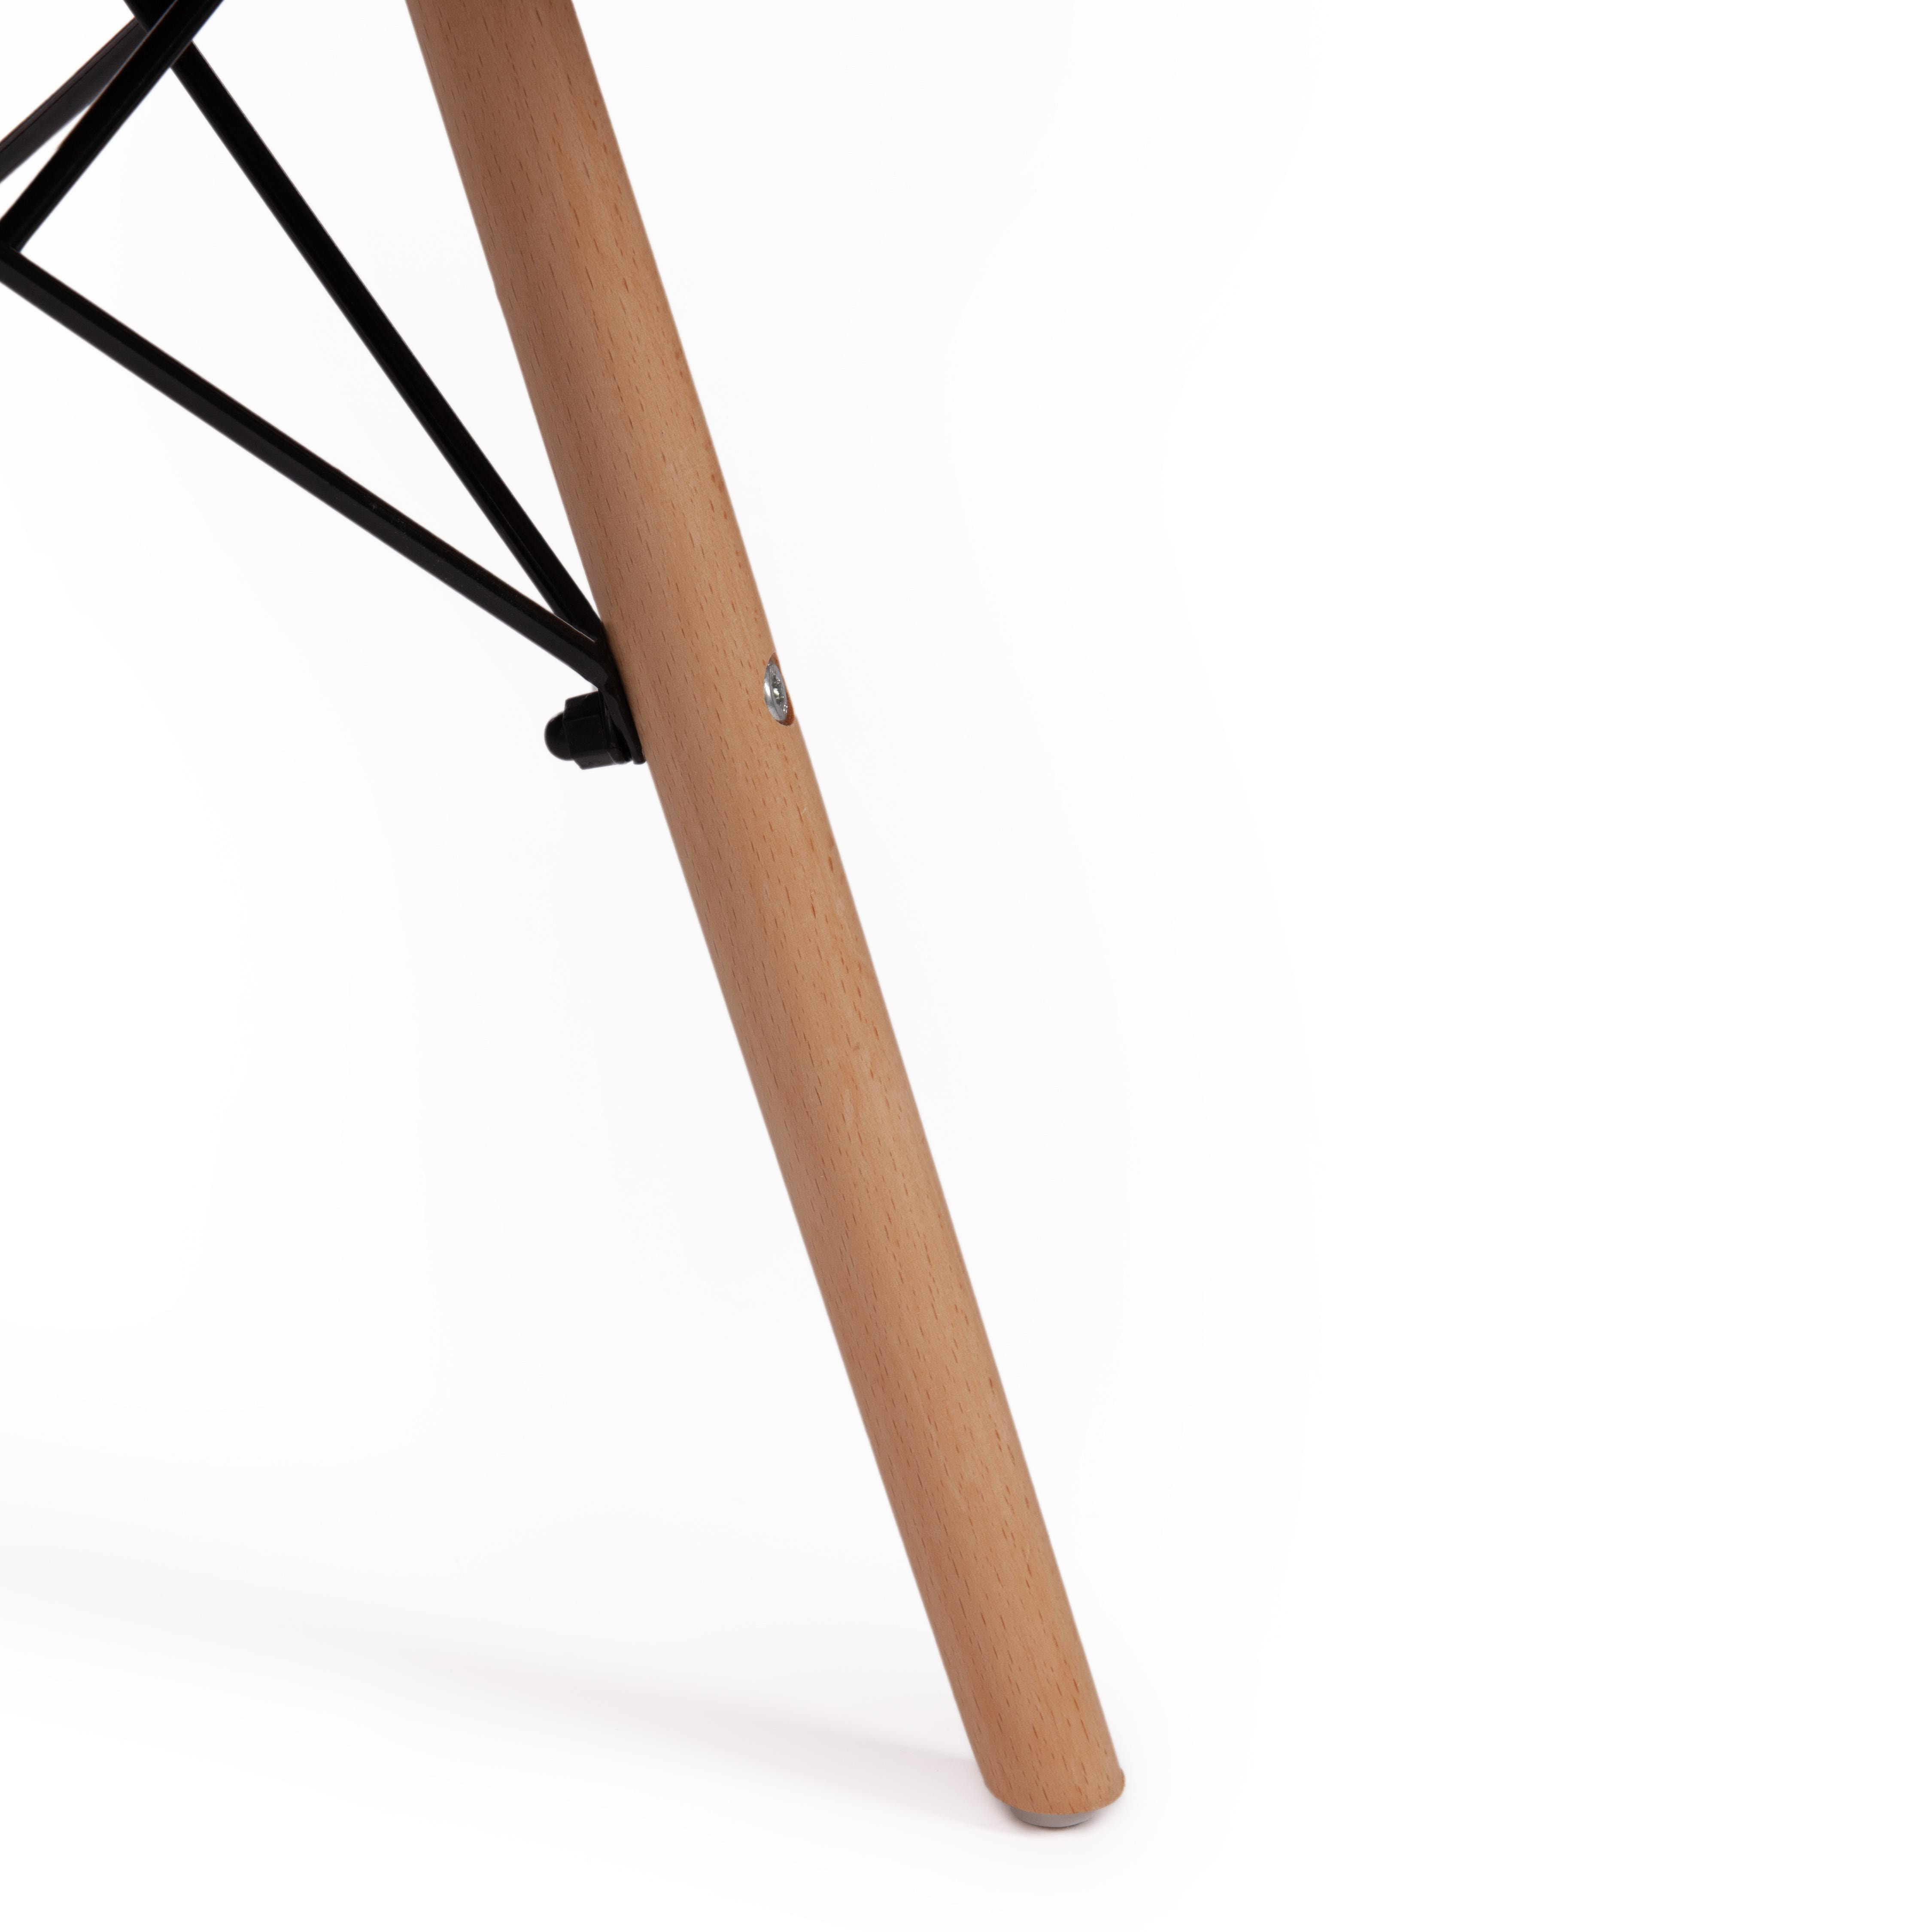 Кресло CINDY SOFT (EAMES) (mod. 101) дерево береза/металл/мягкое сиденье/ткань, 61 х 60 х 80 см , black/white (черный/белый)